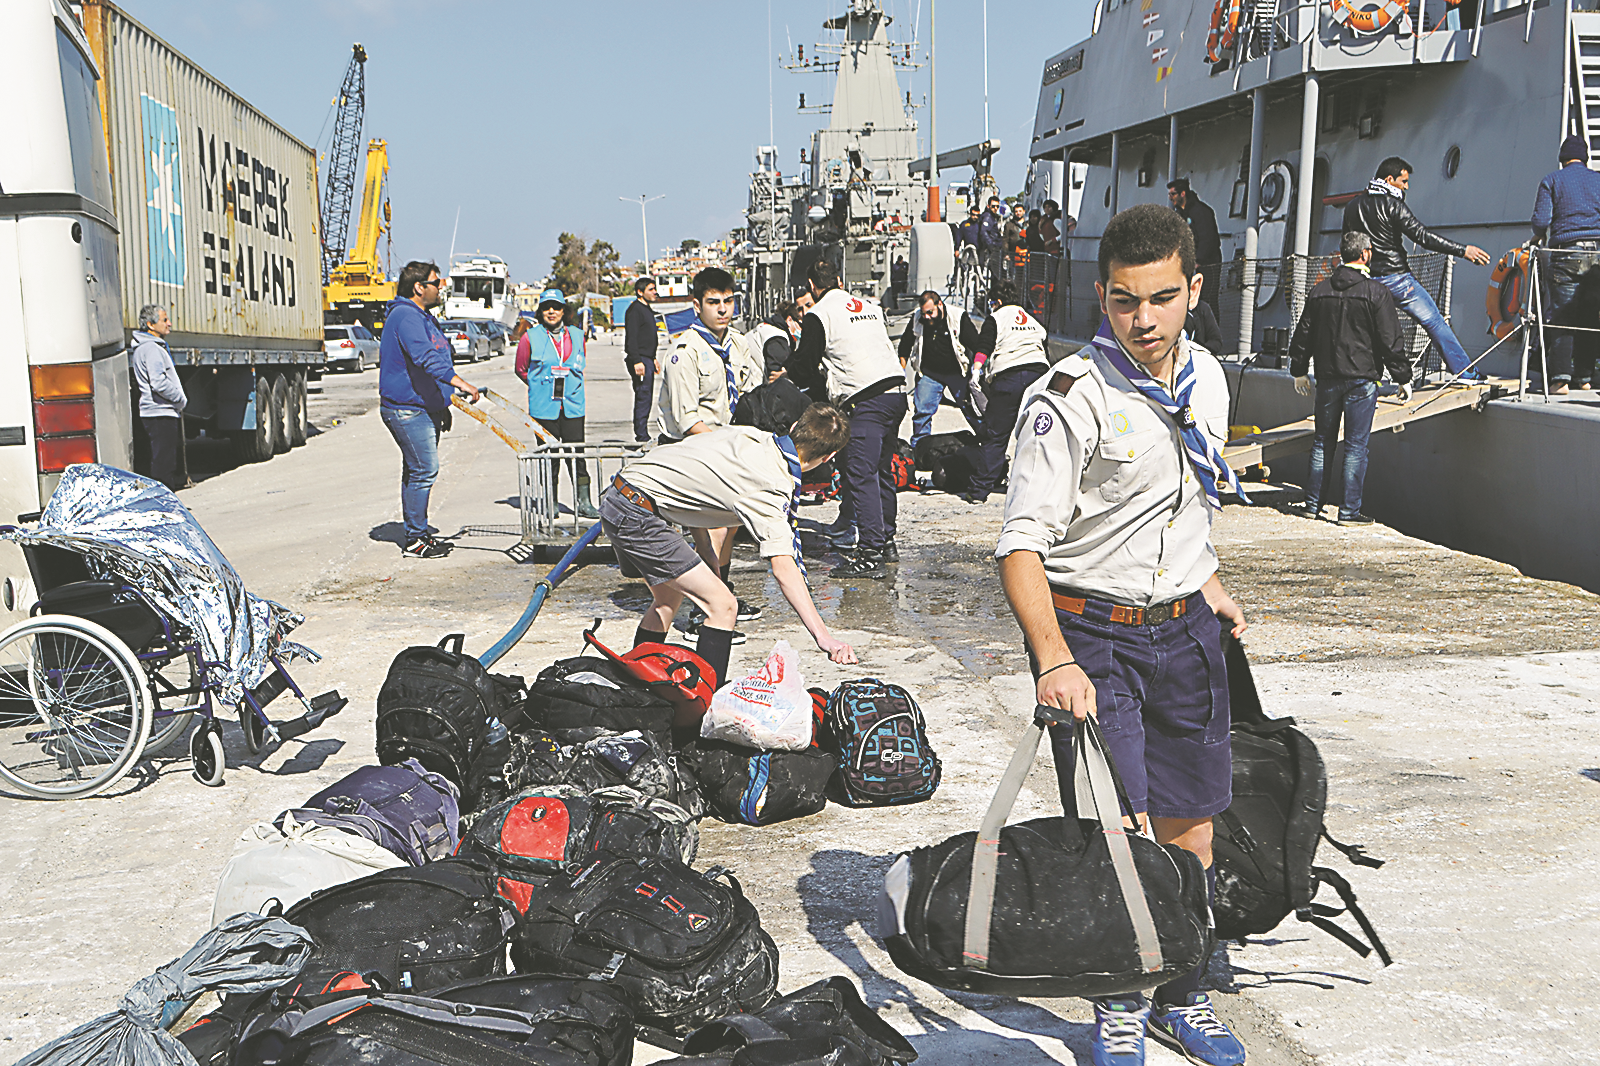 Μέλη του 3ου Σώματος προσκόπων του νησιού, μεταξύ των οποίων οι Γιάννης Σβώρος και Ξενοφών Κουκούτας βοηθούν στη μεταφορά σακιδίων των προσφύγων που μόλις έχουν φθάσει στο λιμάνι της Μυτιλήνης